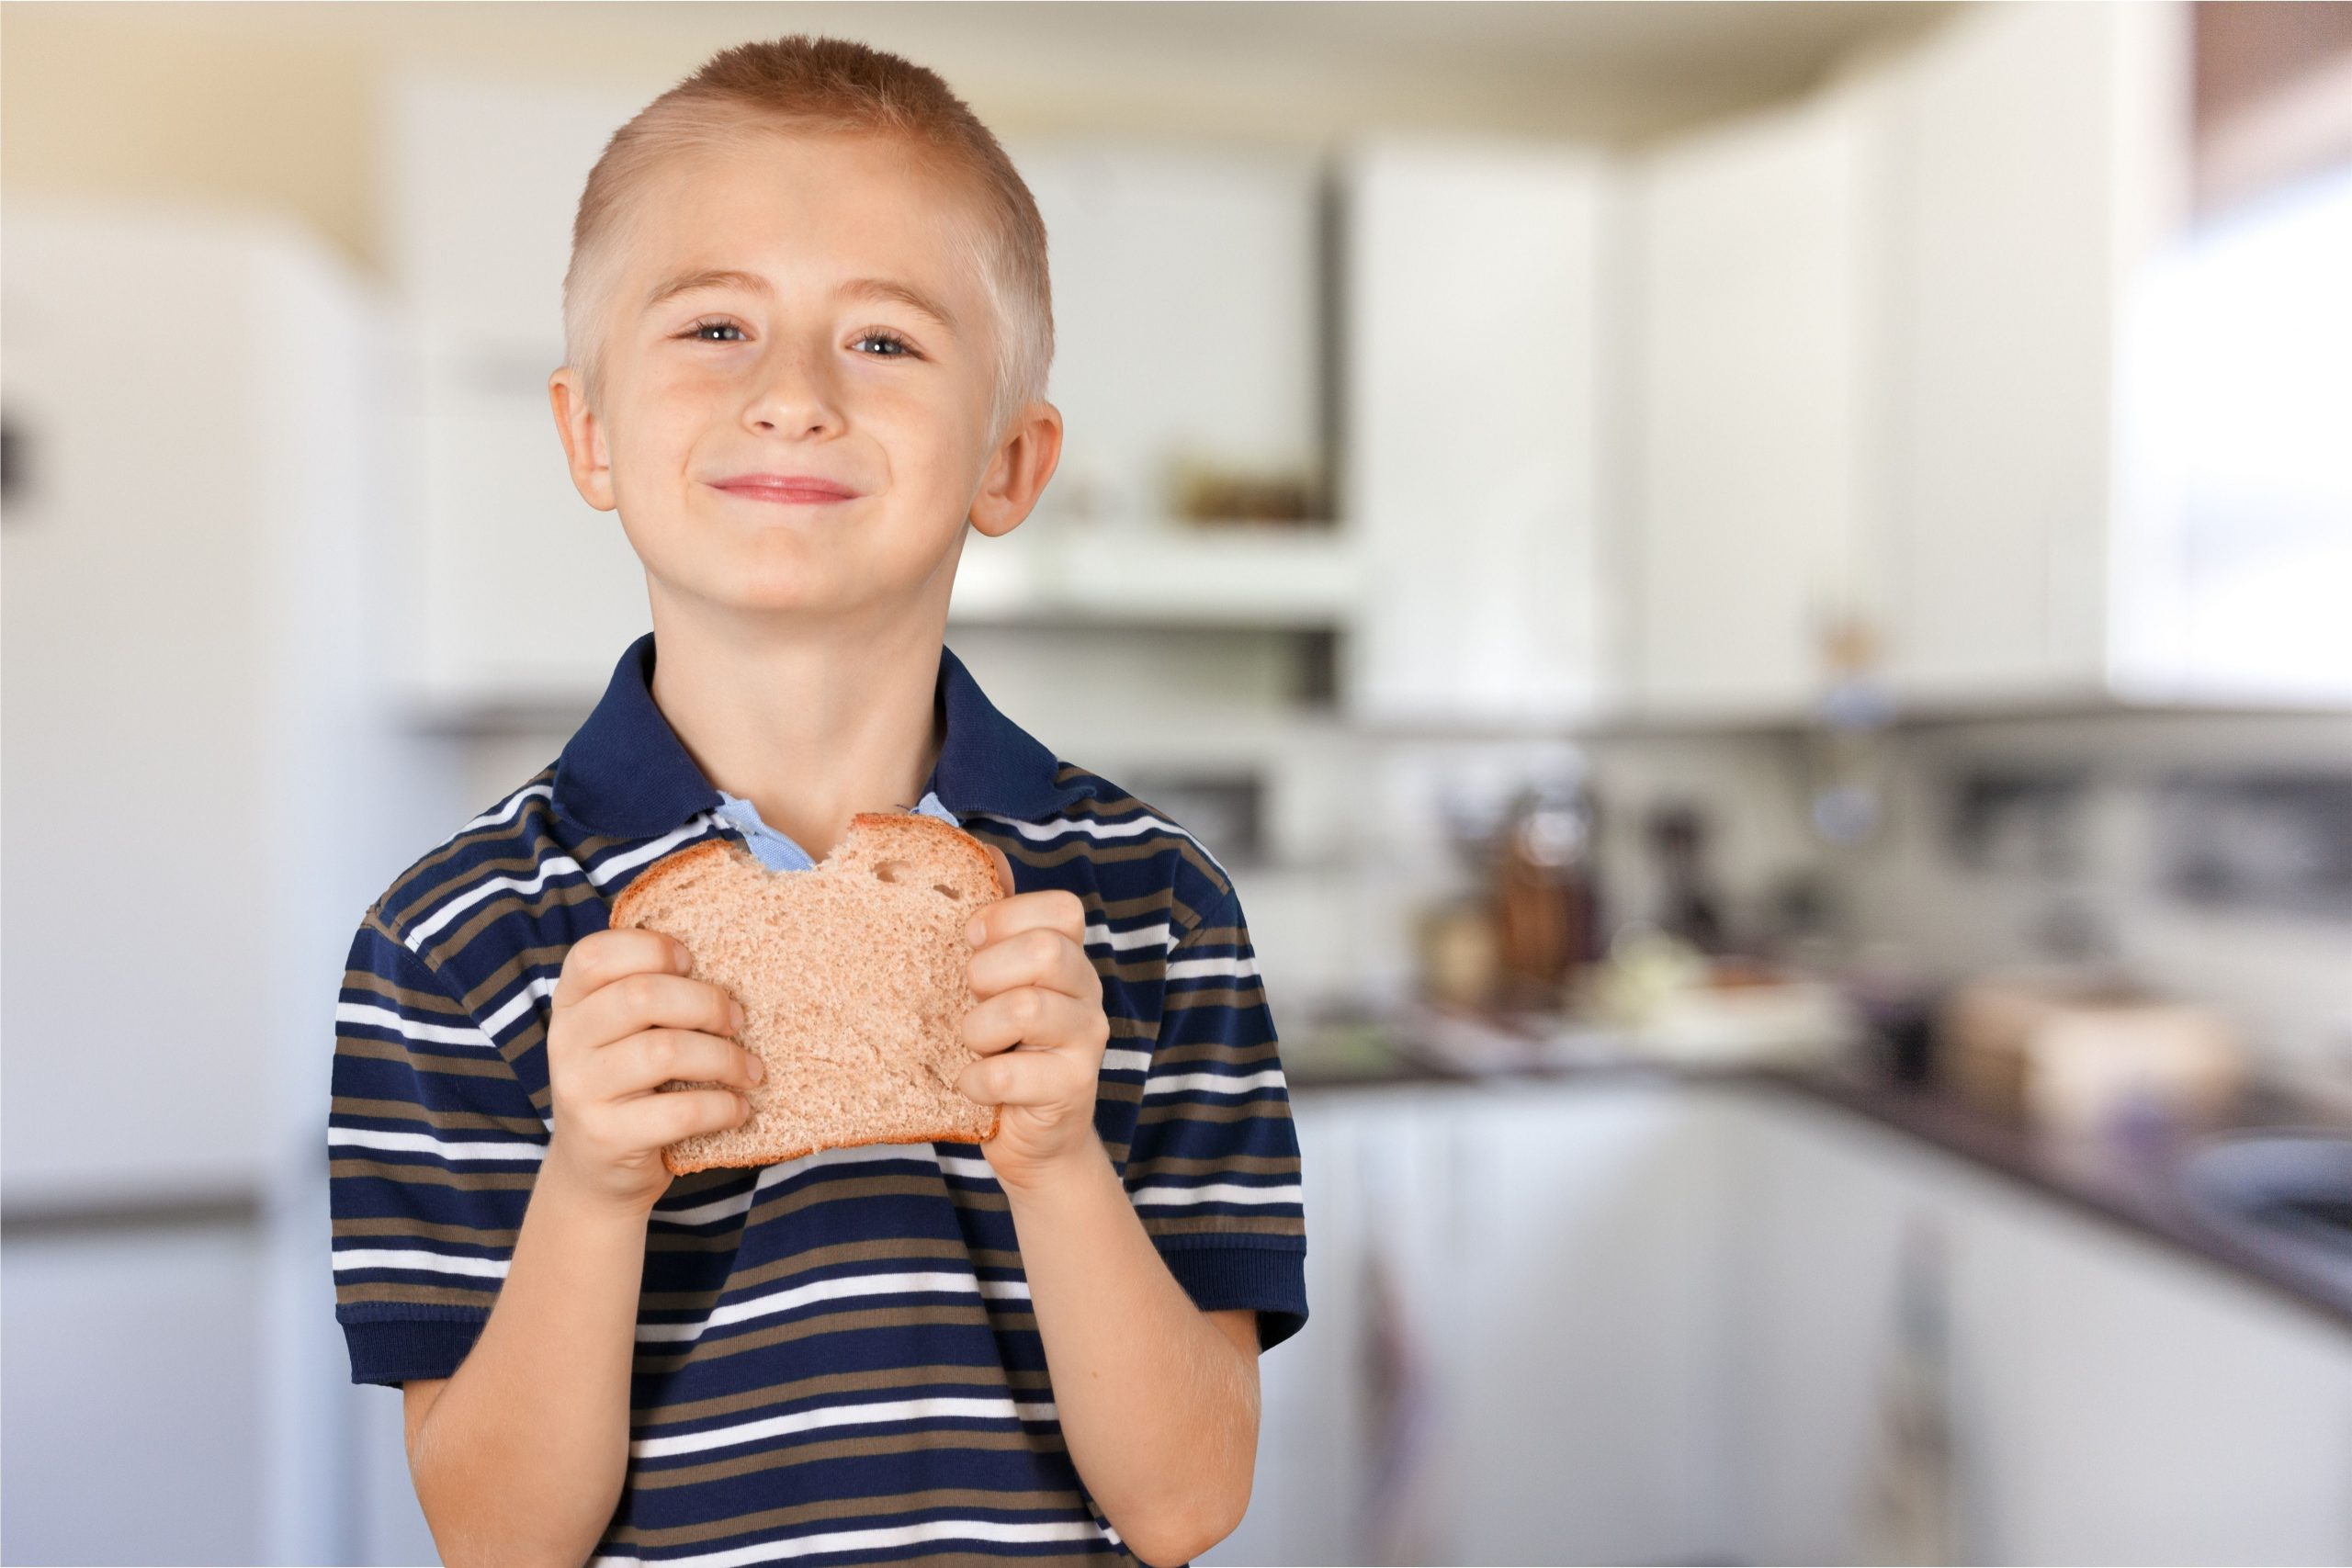 Little boy eating peanut butter sandwich in the kitchen